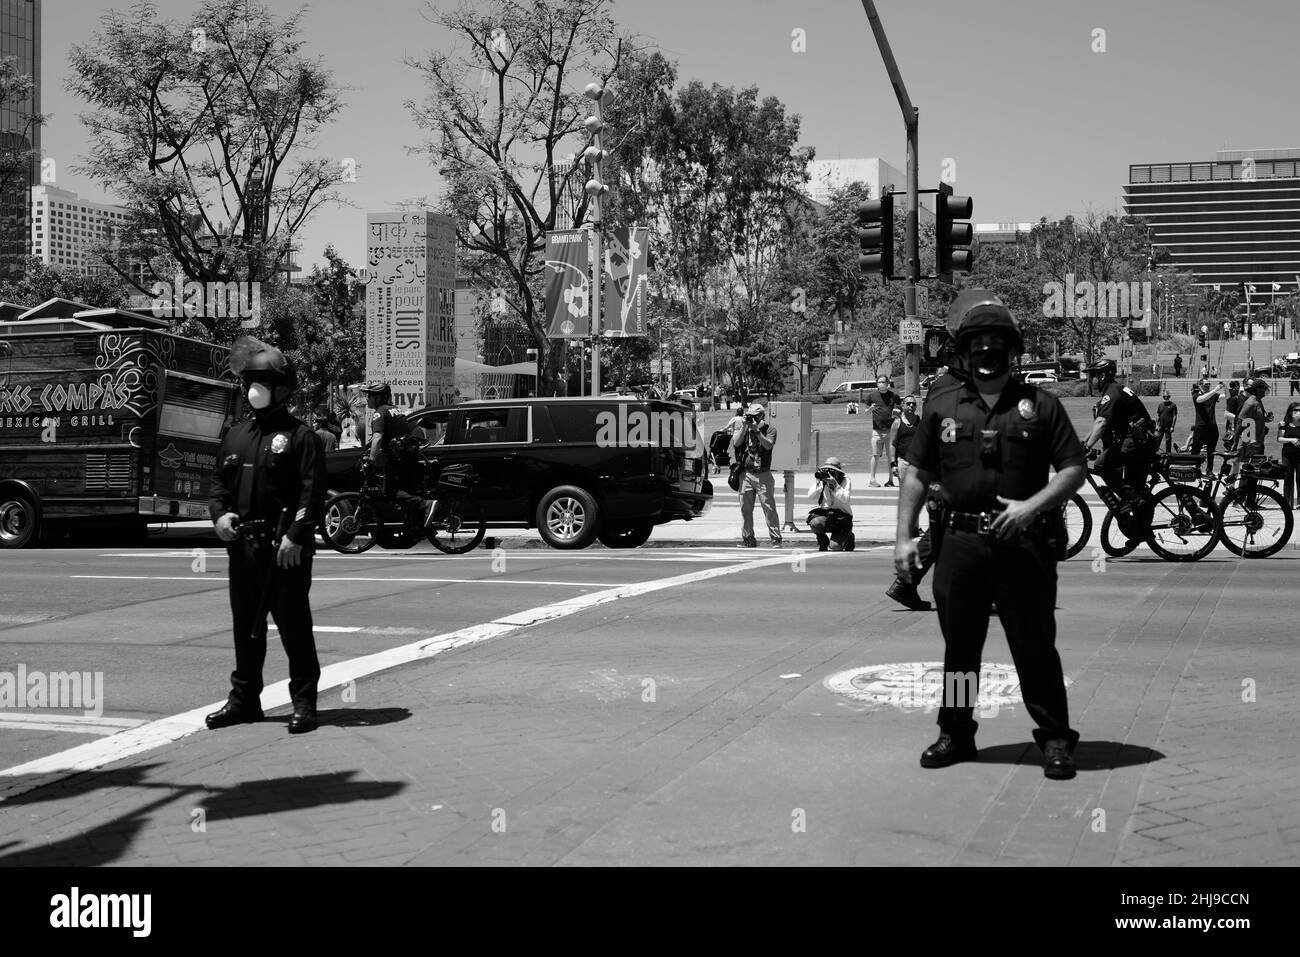 La protesta del Covid a Los Angeles tempi dispari nella storia del mondo con il Covid-19 la gente non è felice e la polizia è fuori in vigore Foto Stock